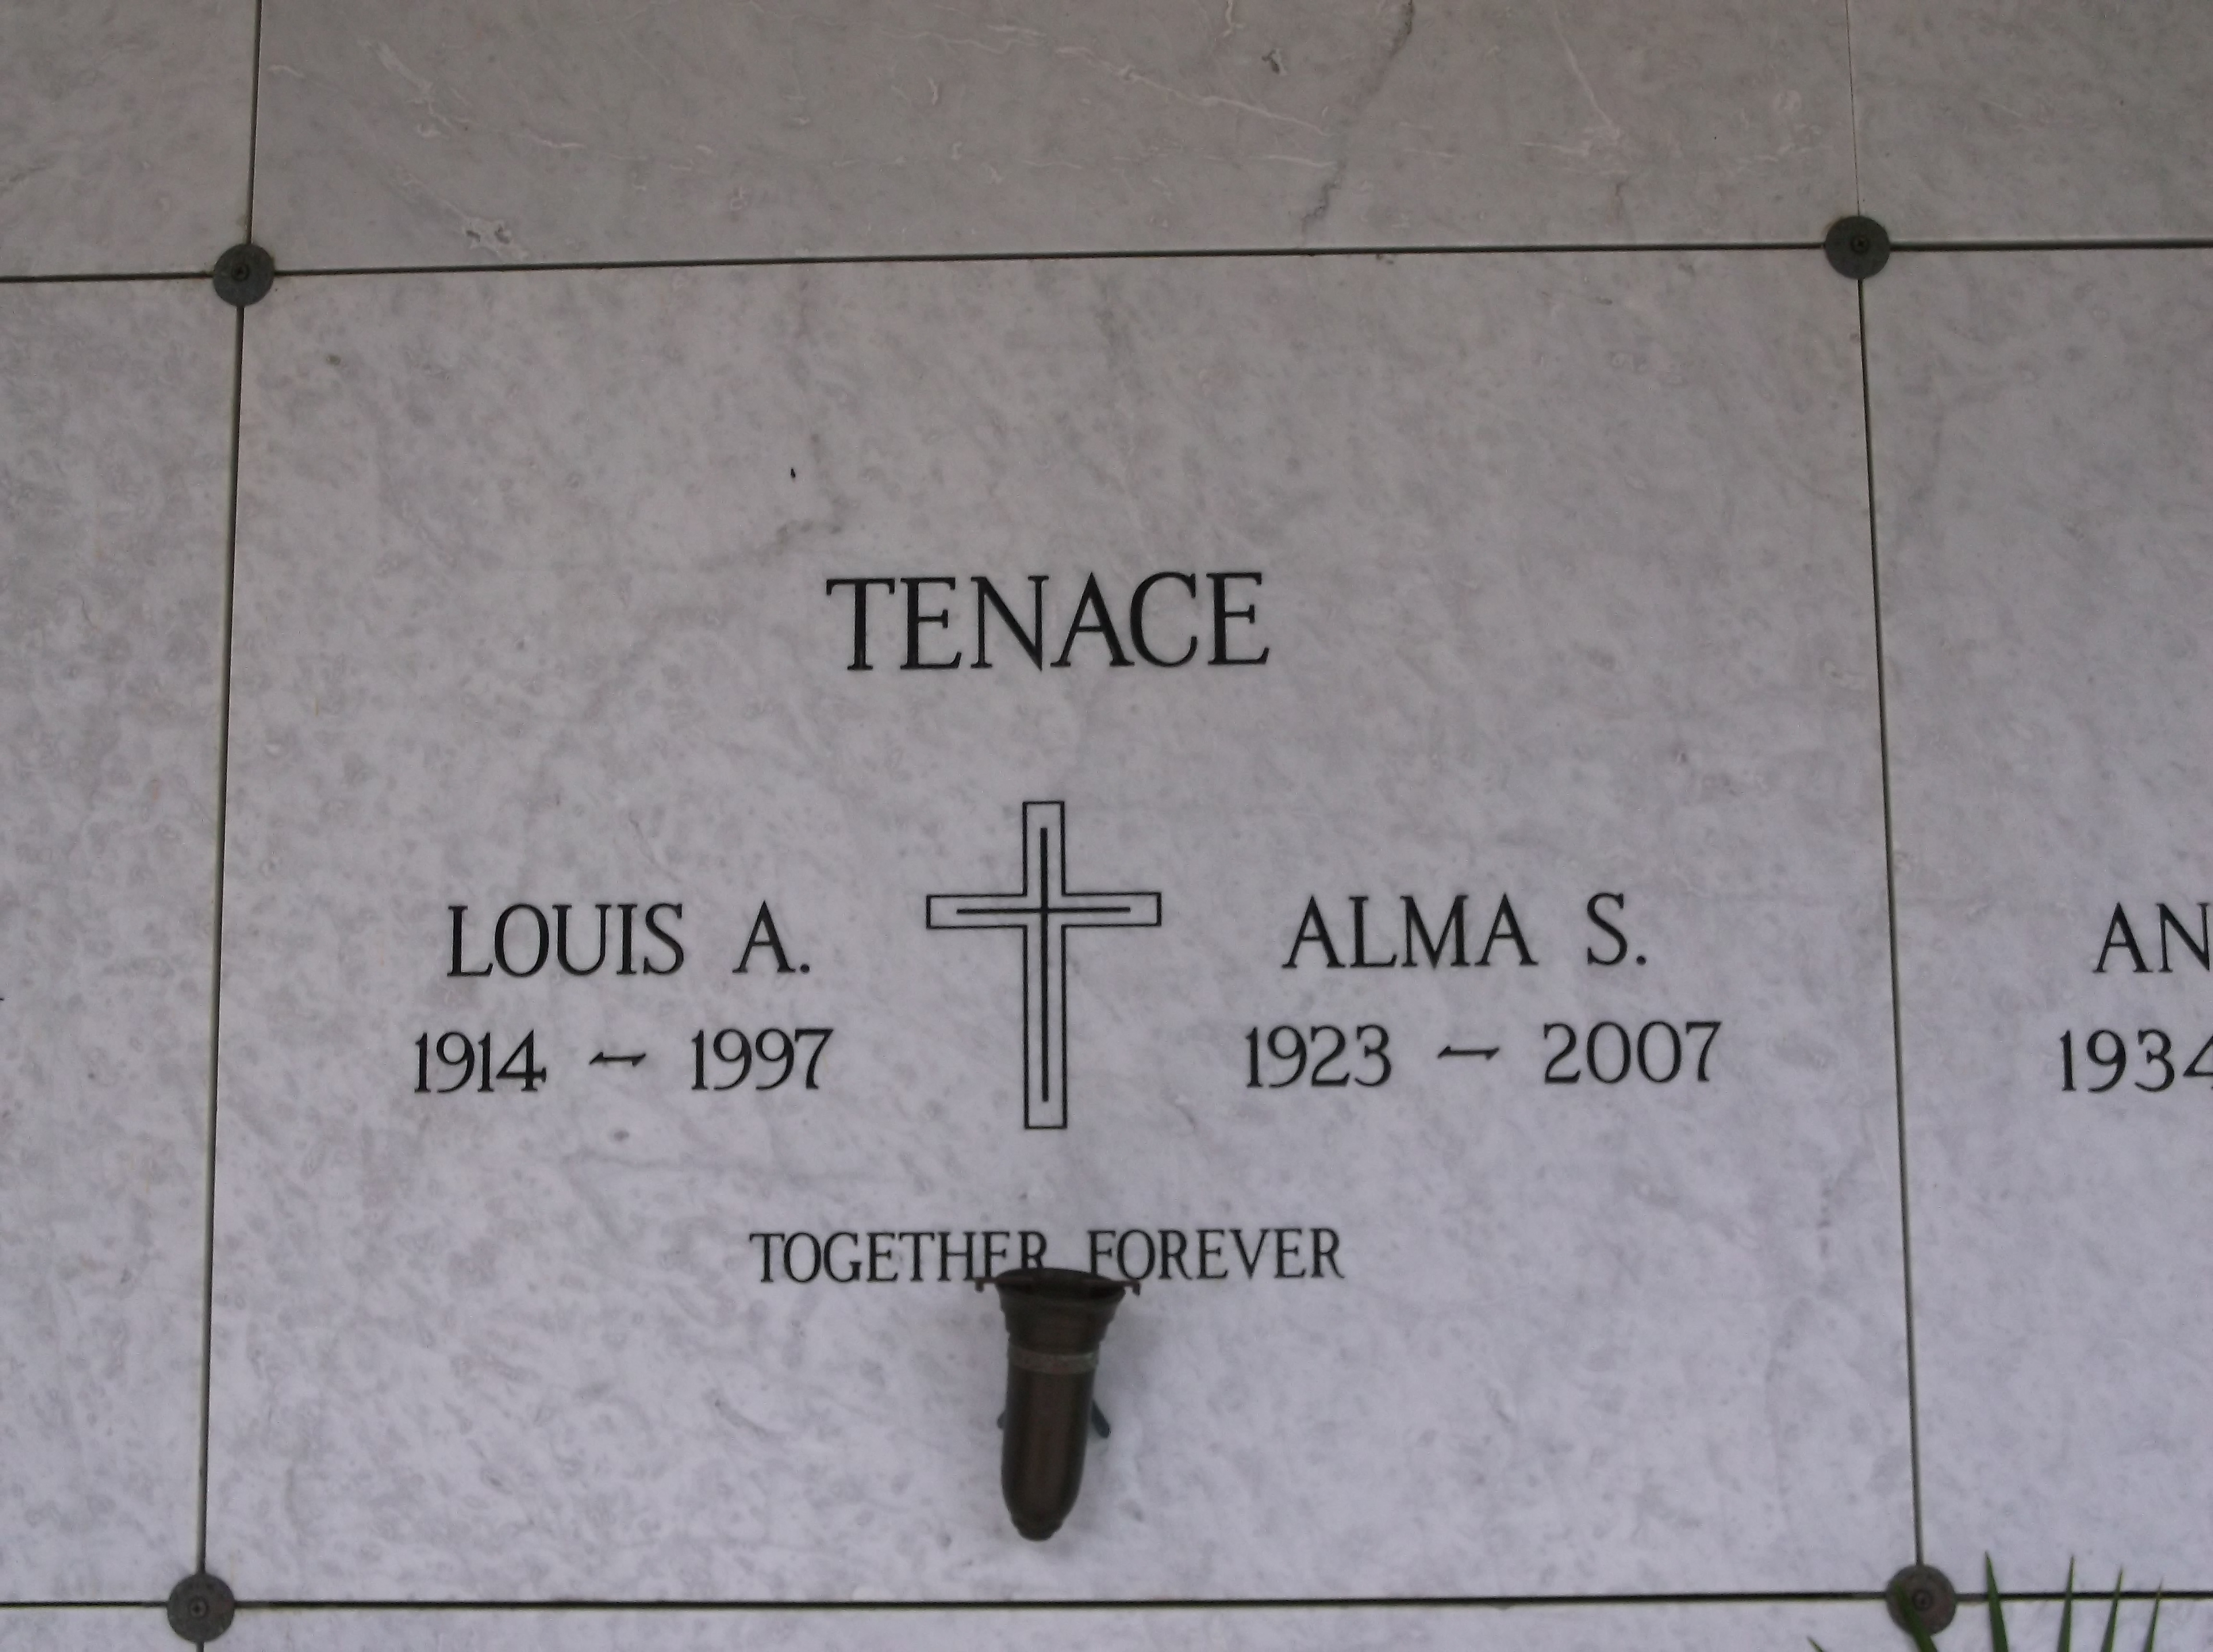 Louis A Tenace